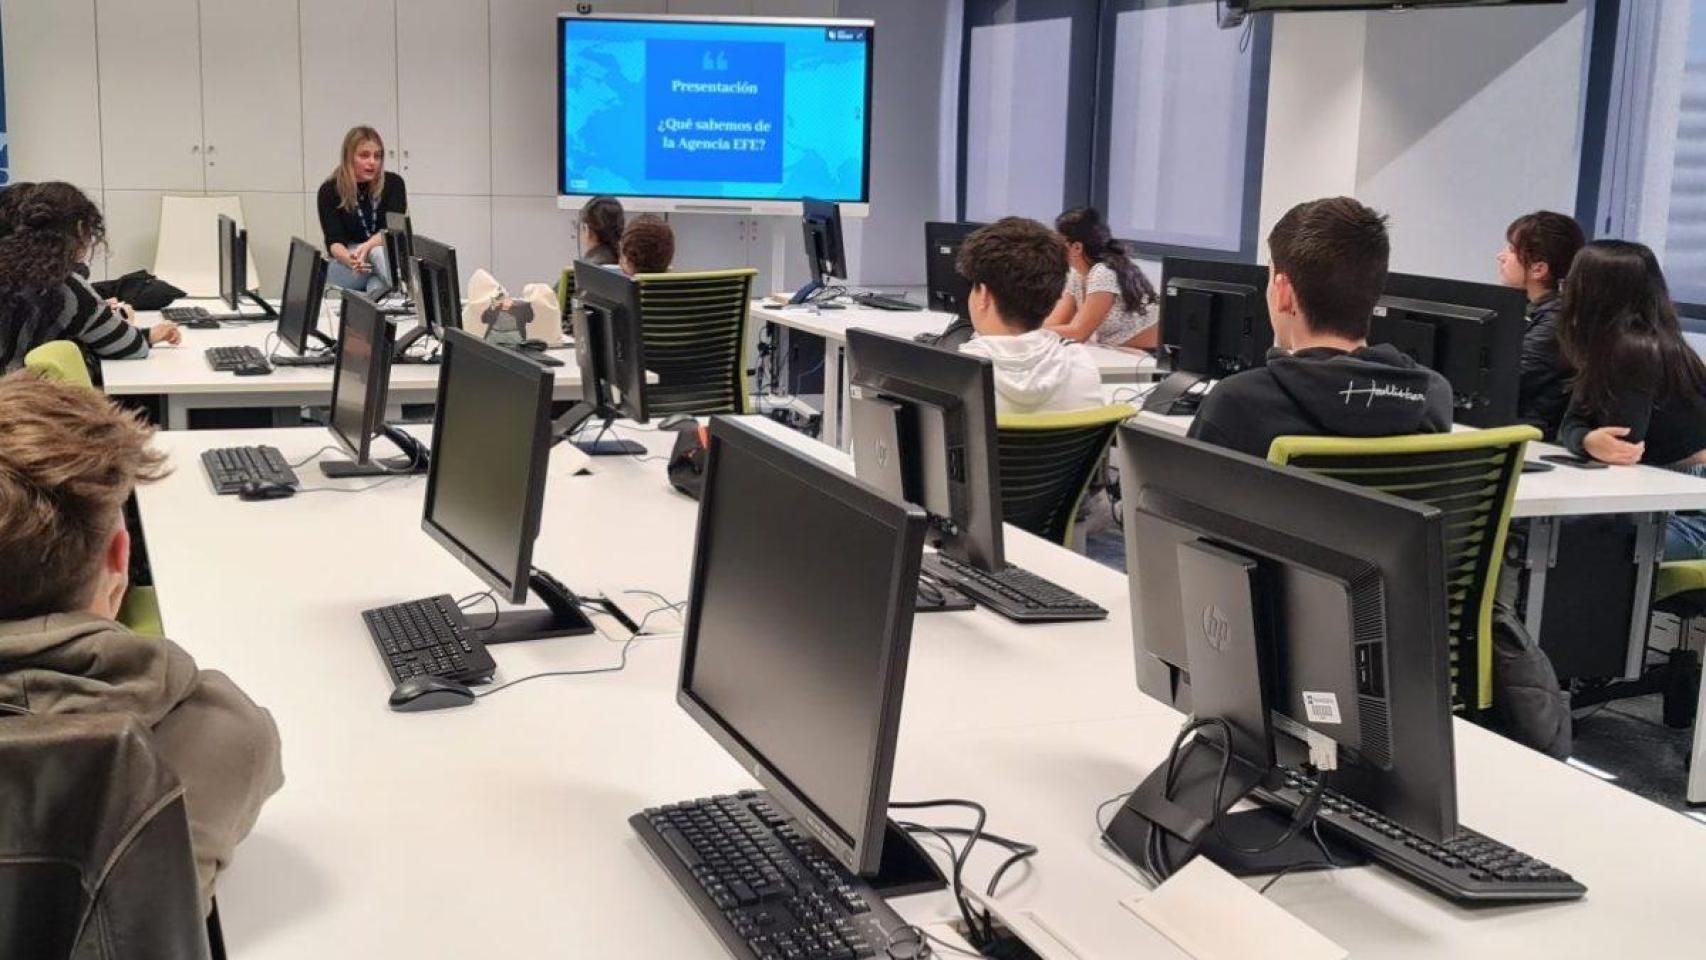 Un grupo de personas en una clase de informática y nuevas tecnologías.